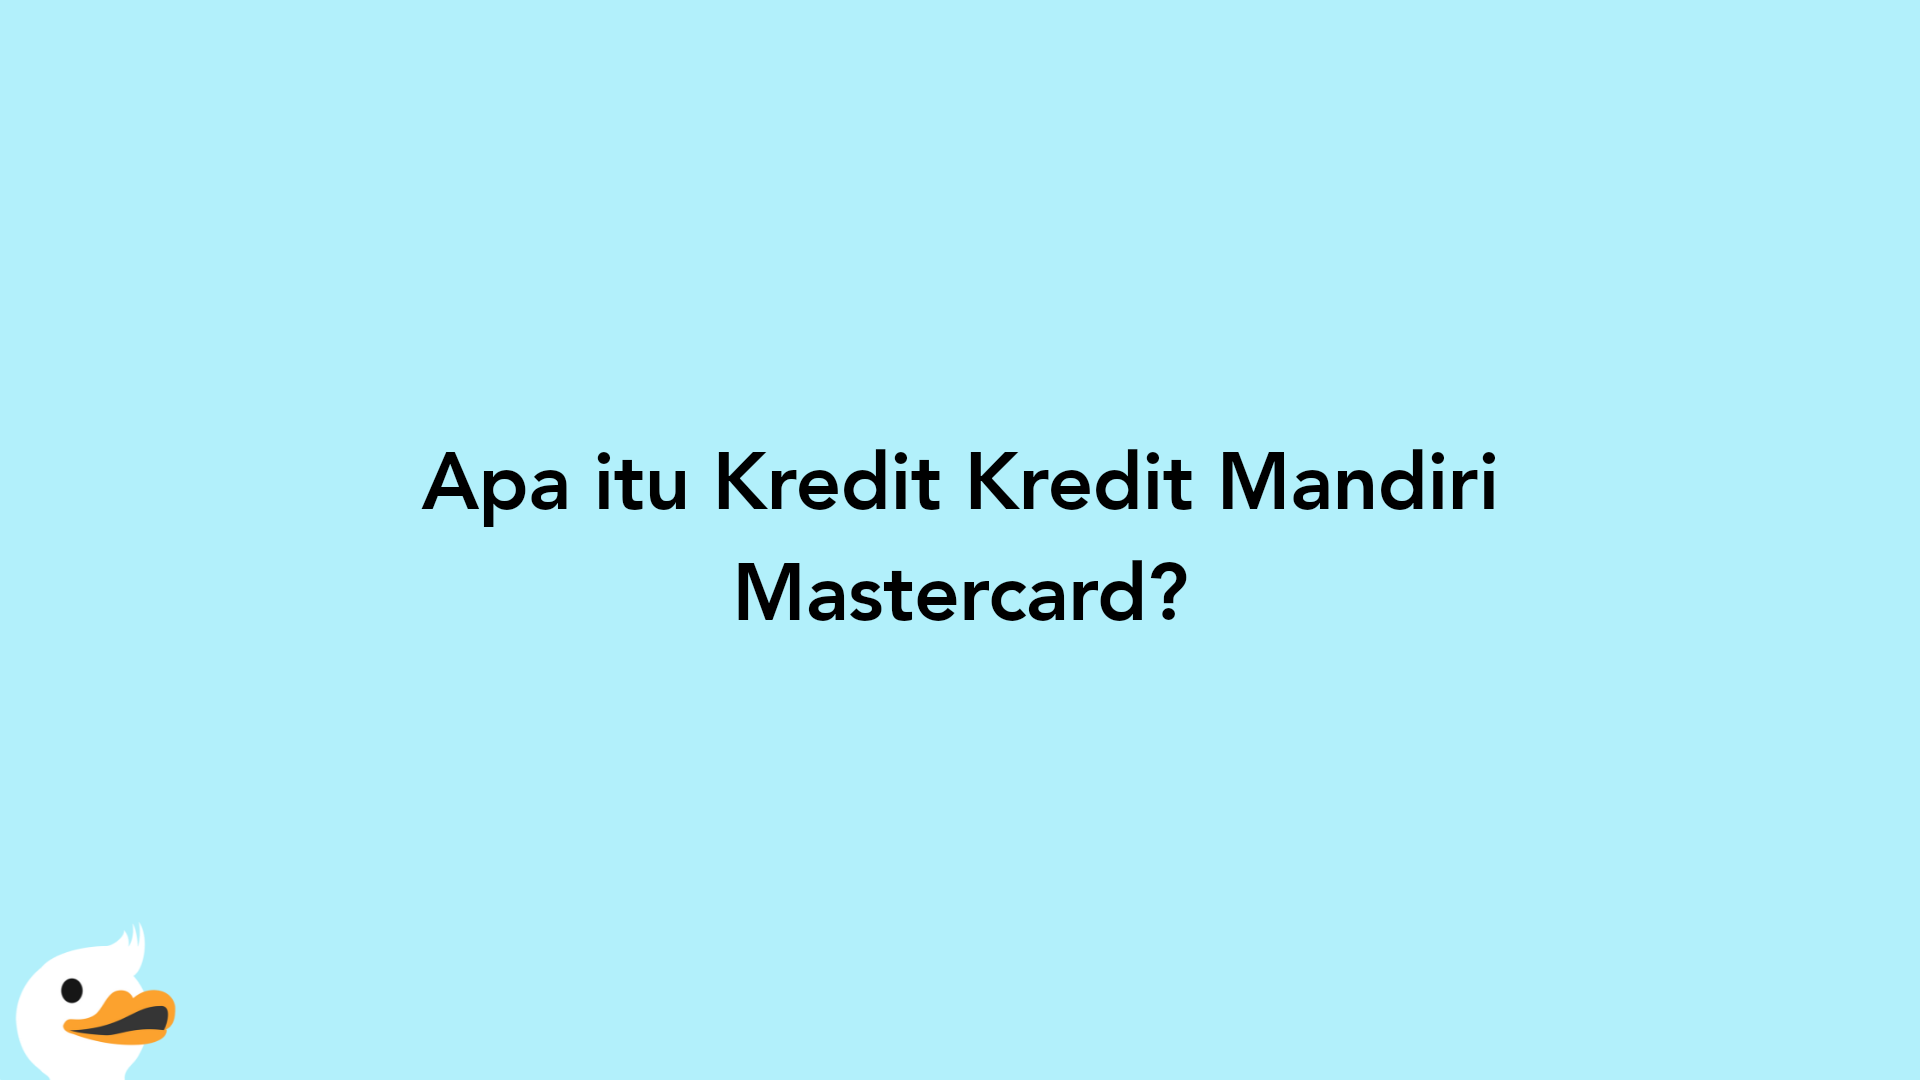 Apa itu Kredit Kredit Mandiri Mastercard?